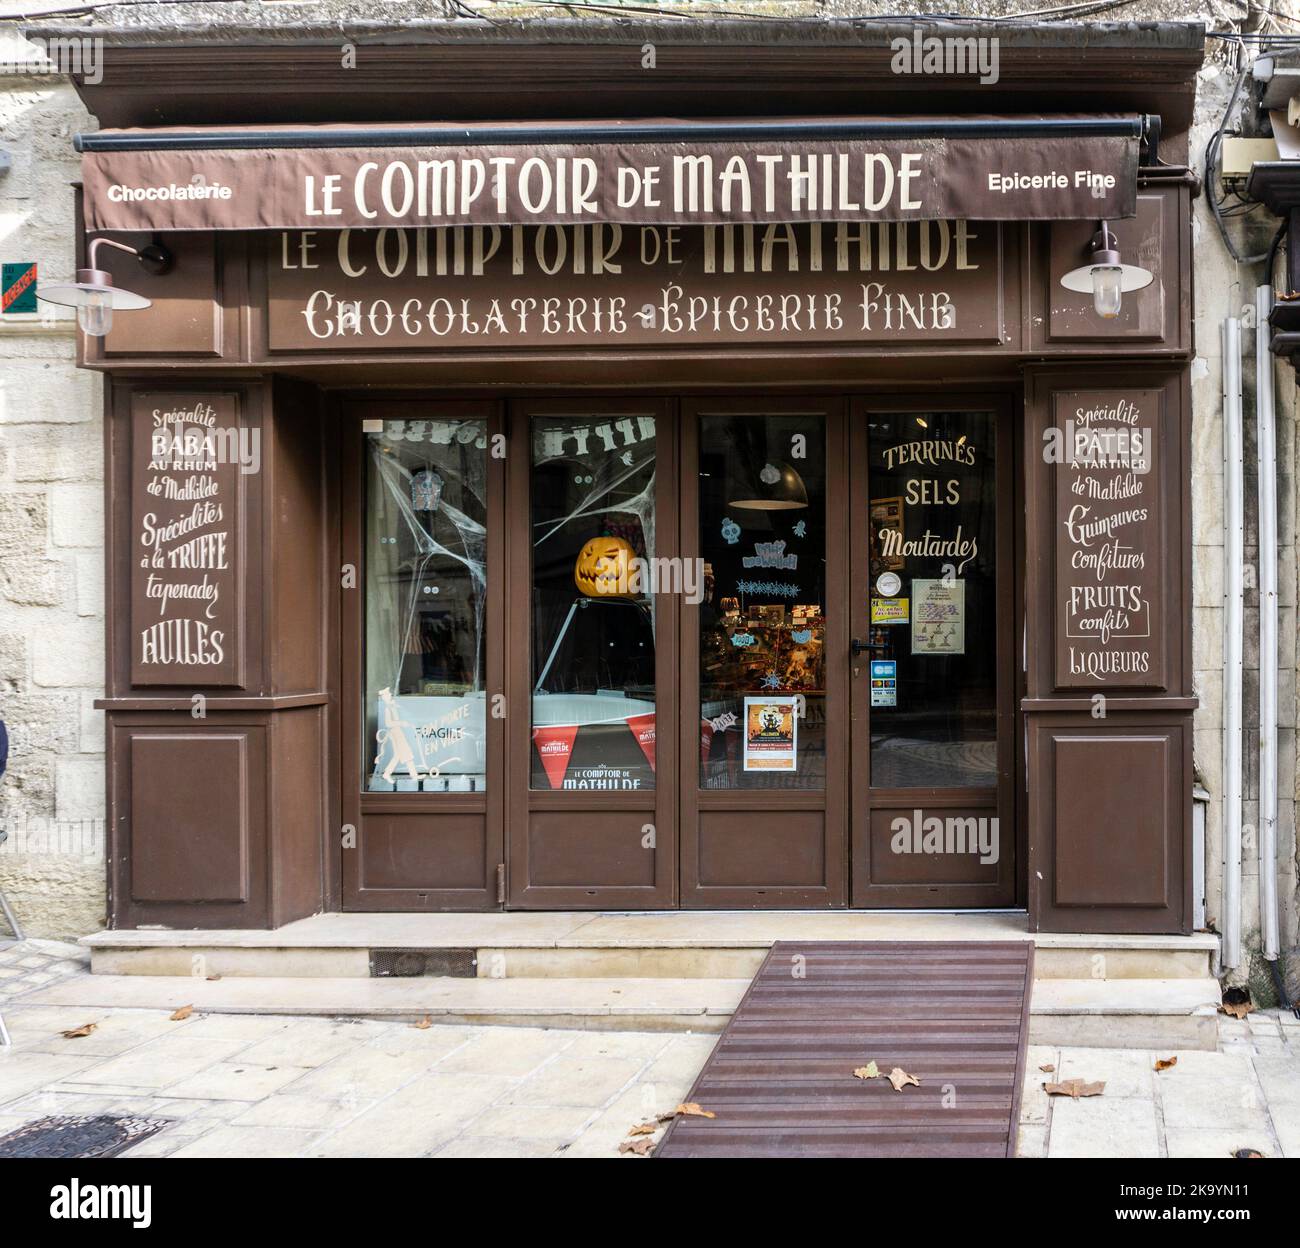 Una sucursal de Le Comptoir de Mathilde en Uzes, Francia, que vende una gama de productos de chocolate y delicatessen. Foto de stock